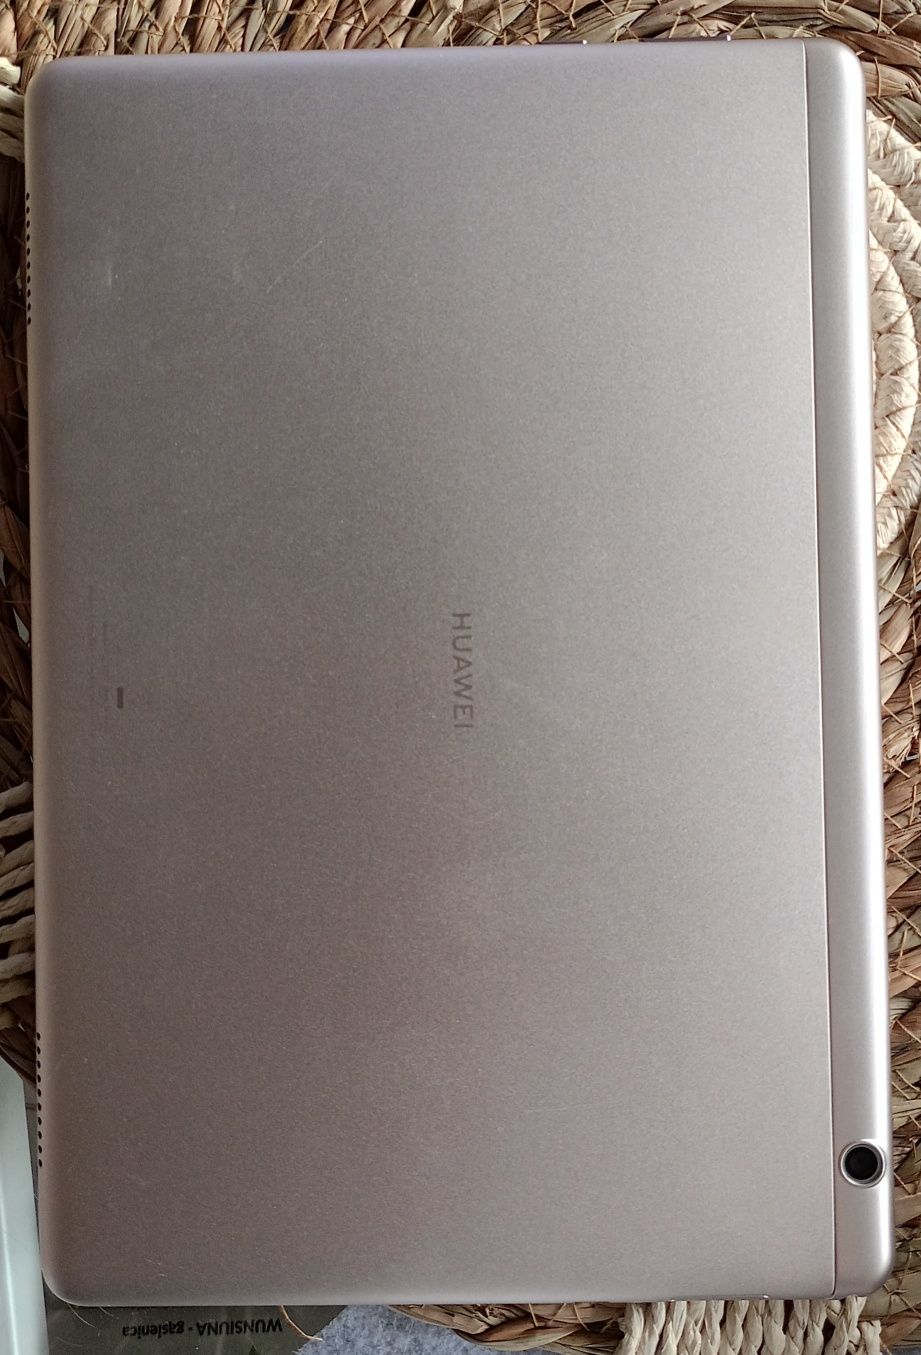 Tablet Huawei Media pad T5